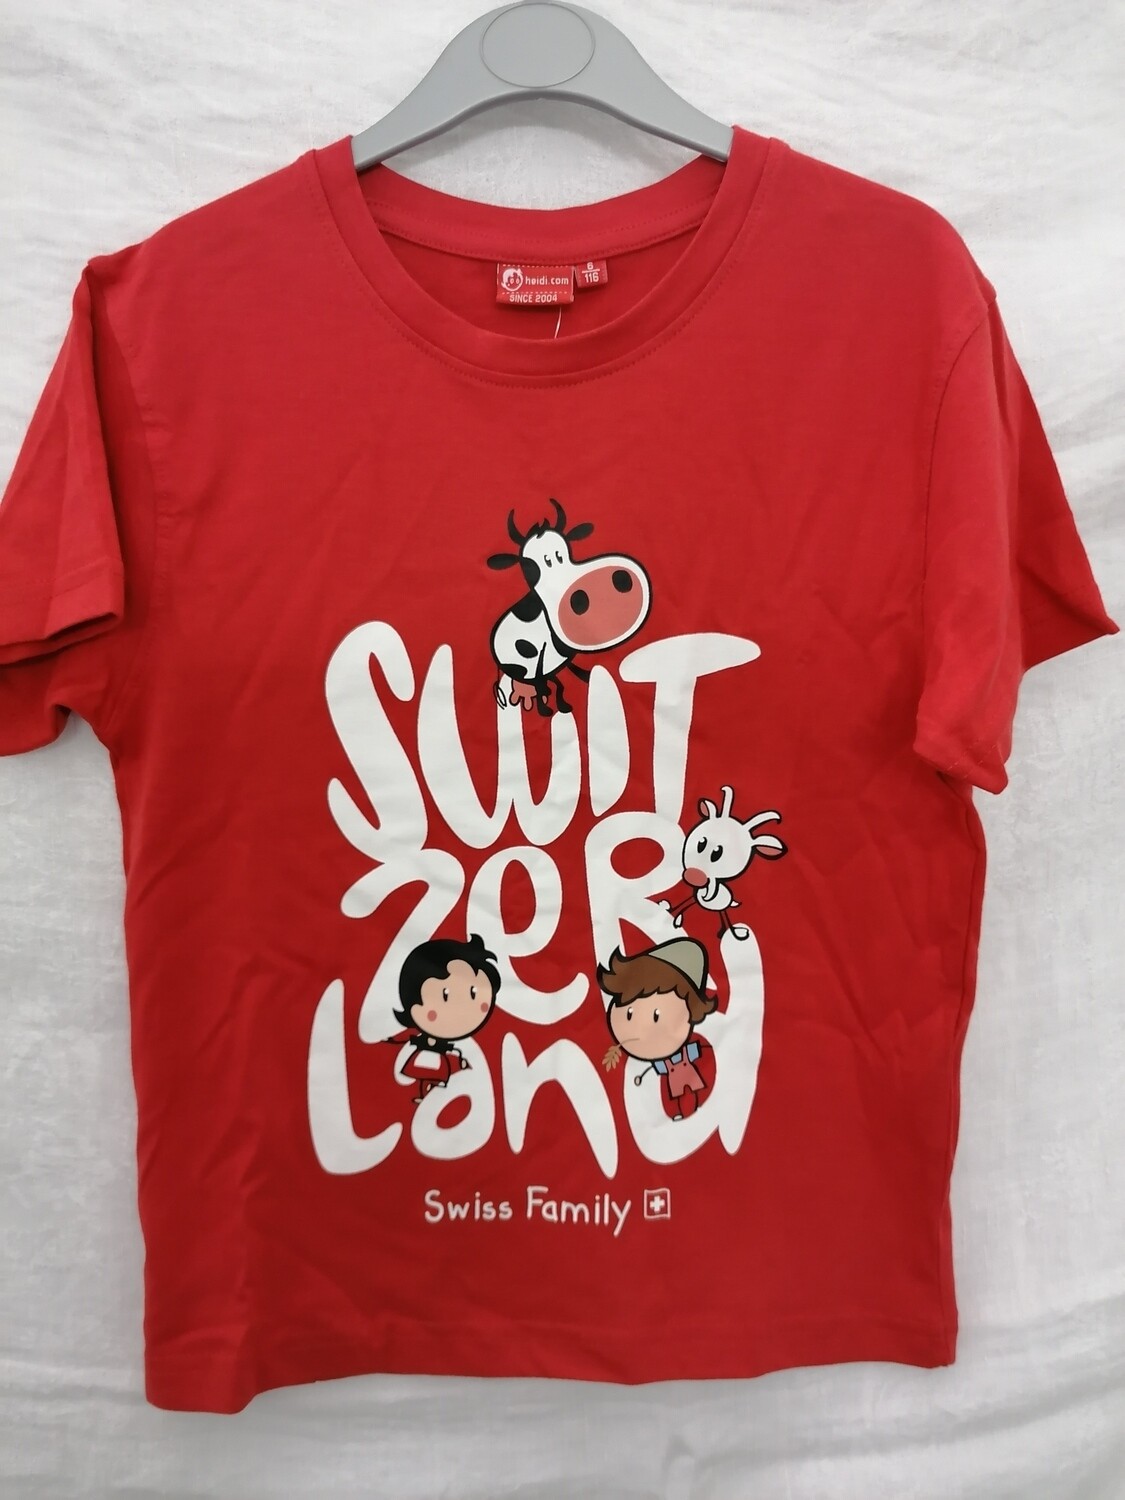 Tee shirt rouge Switzerland Swiss Family